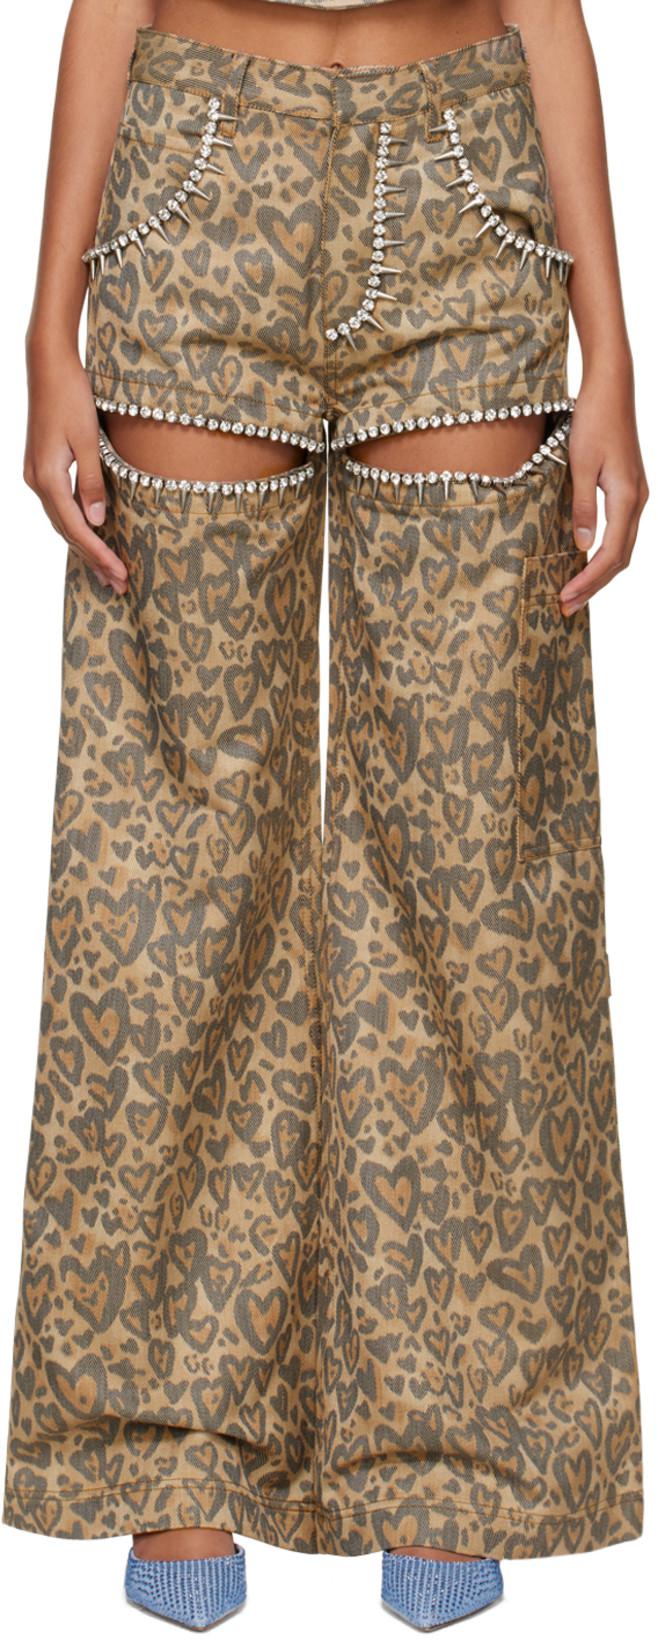 Tan Heart Leopard Slit Jeans by AREA